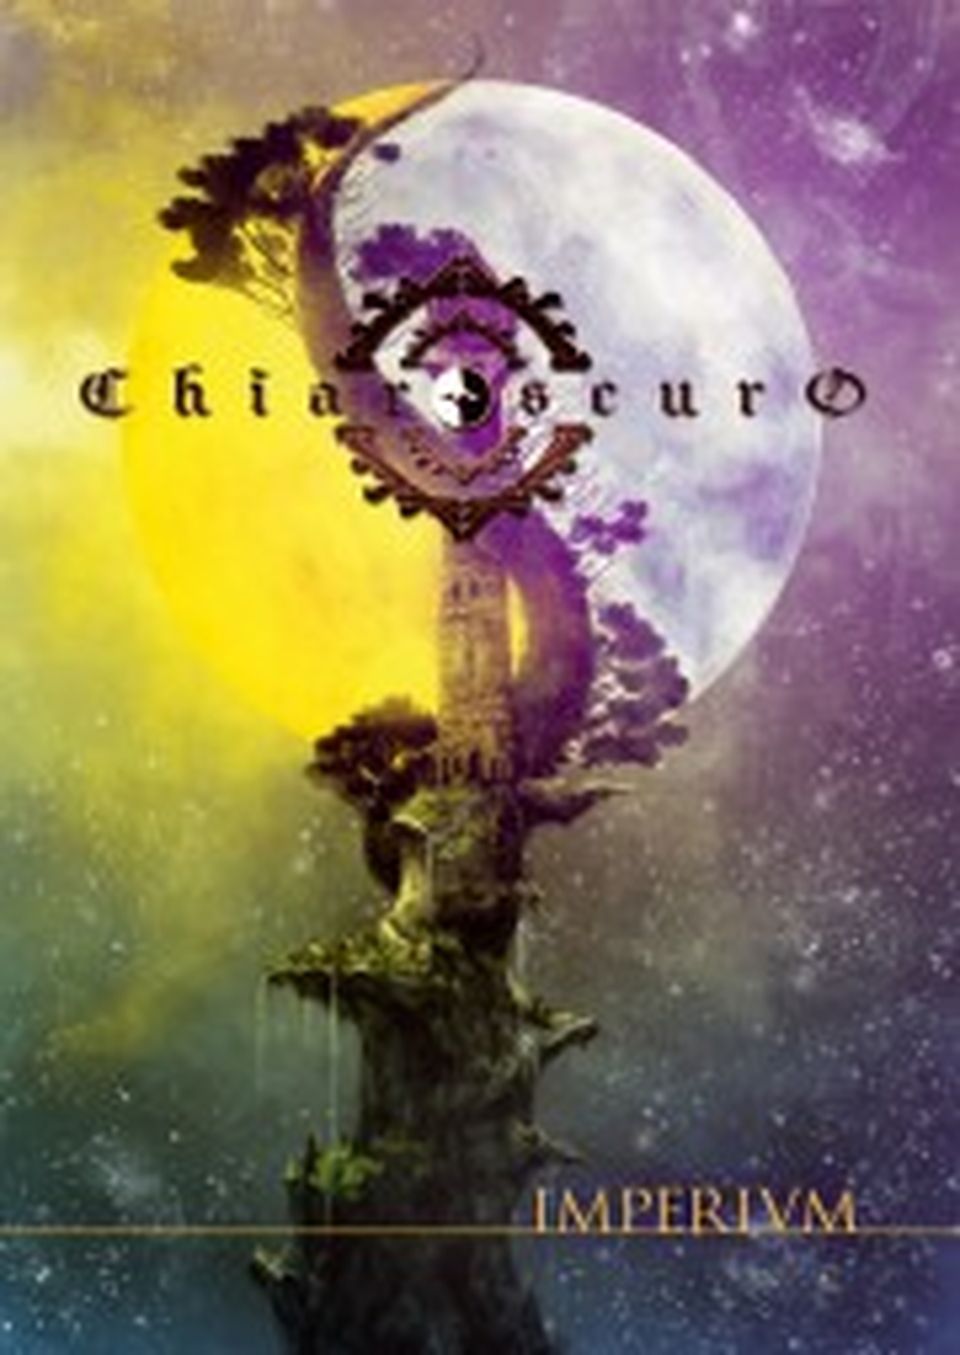 Chiaroscuro : Imperium image